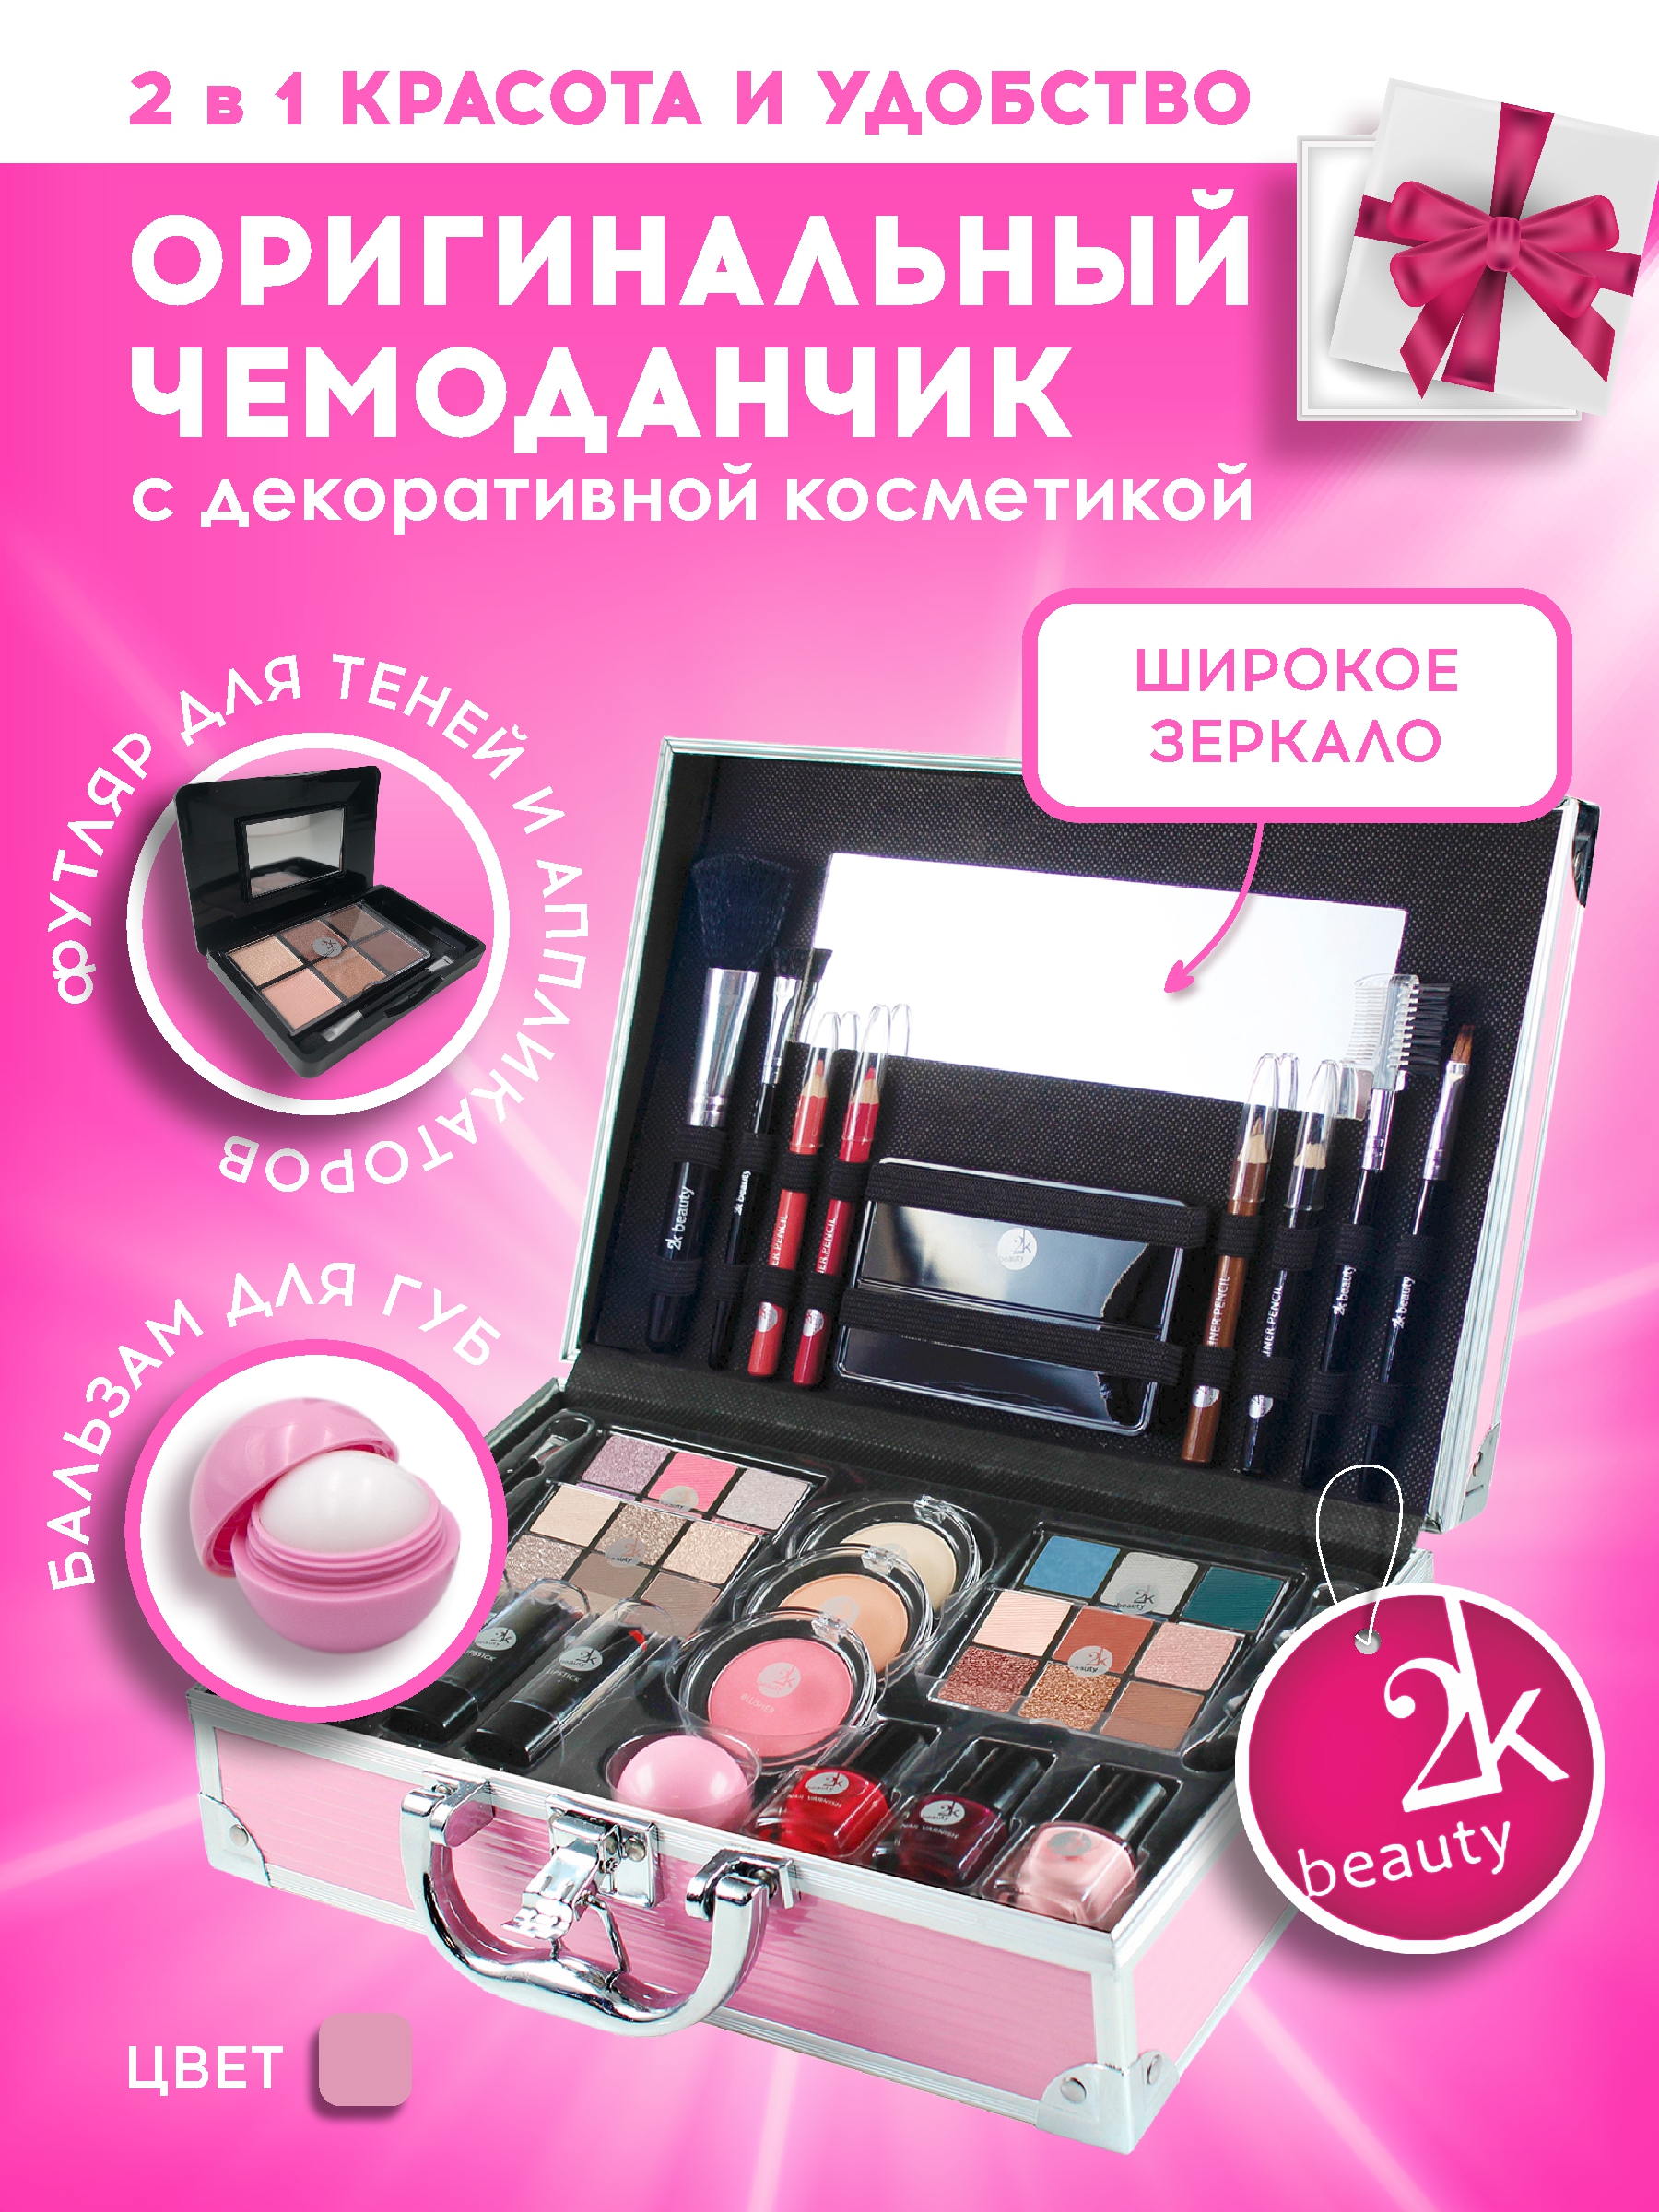 Подарочный бюти бокс чемодан 2K Beauty Набор декортивной косметики для макияжа - фото 2